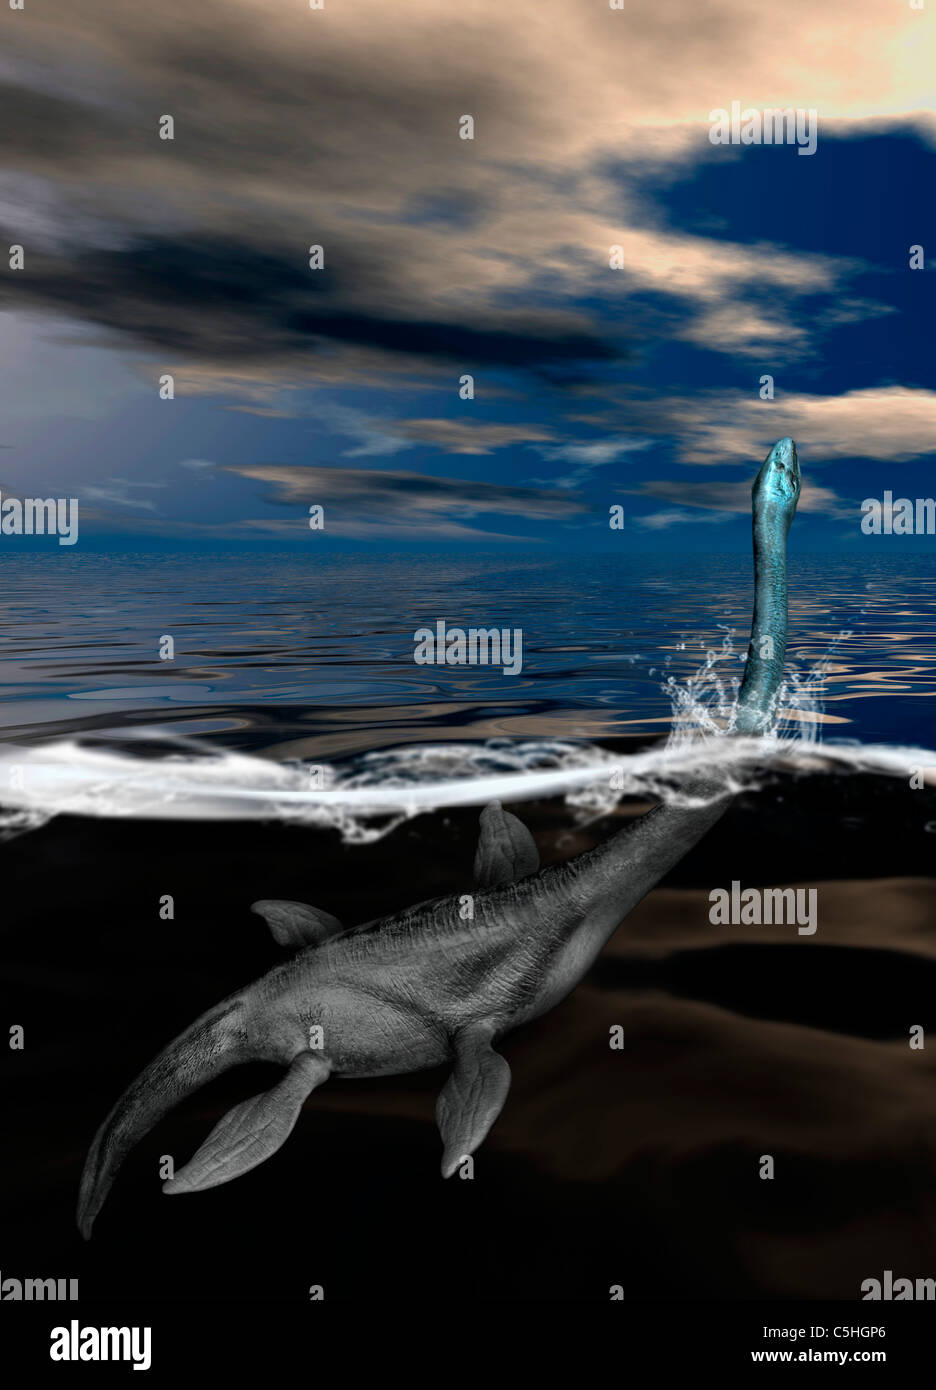 Loch ness monster -Fotos und -Bildmaterial in hoher Auflösung – Alamy